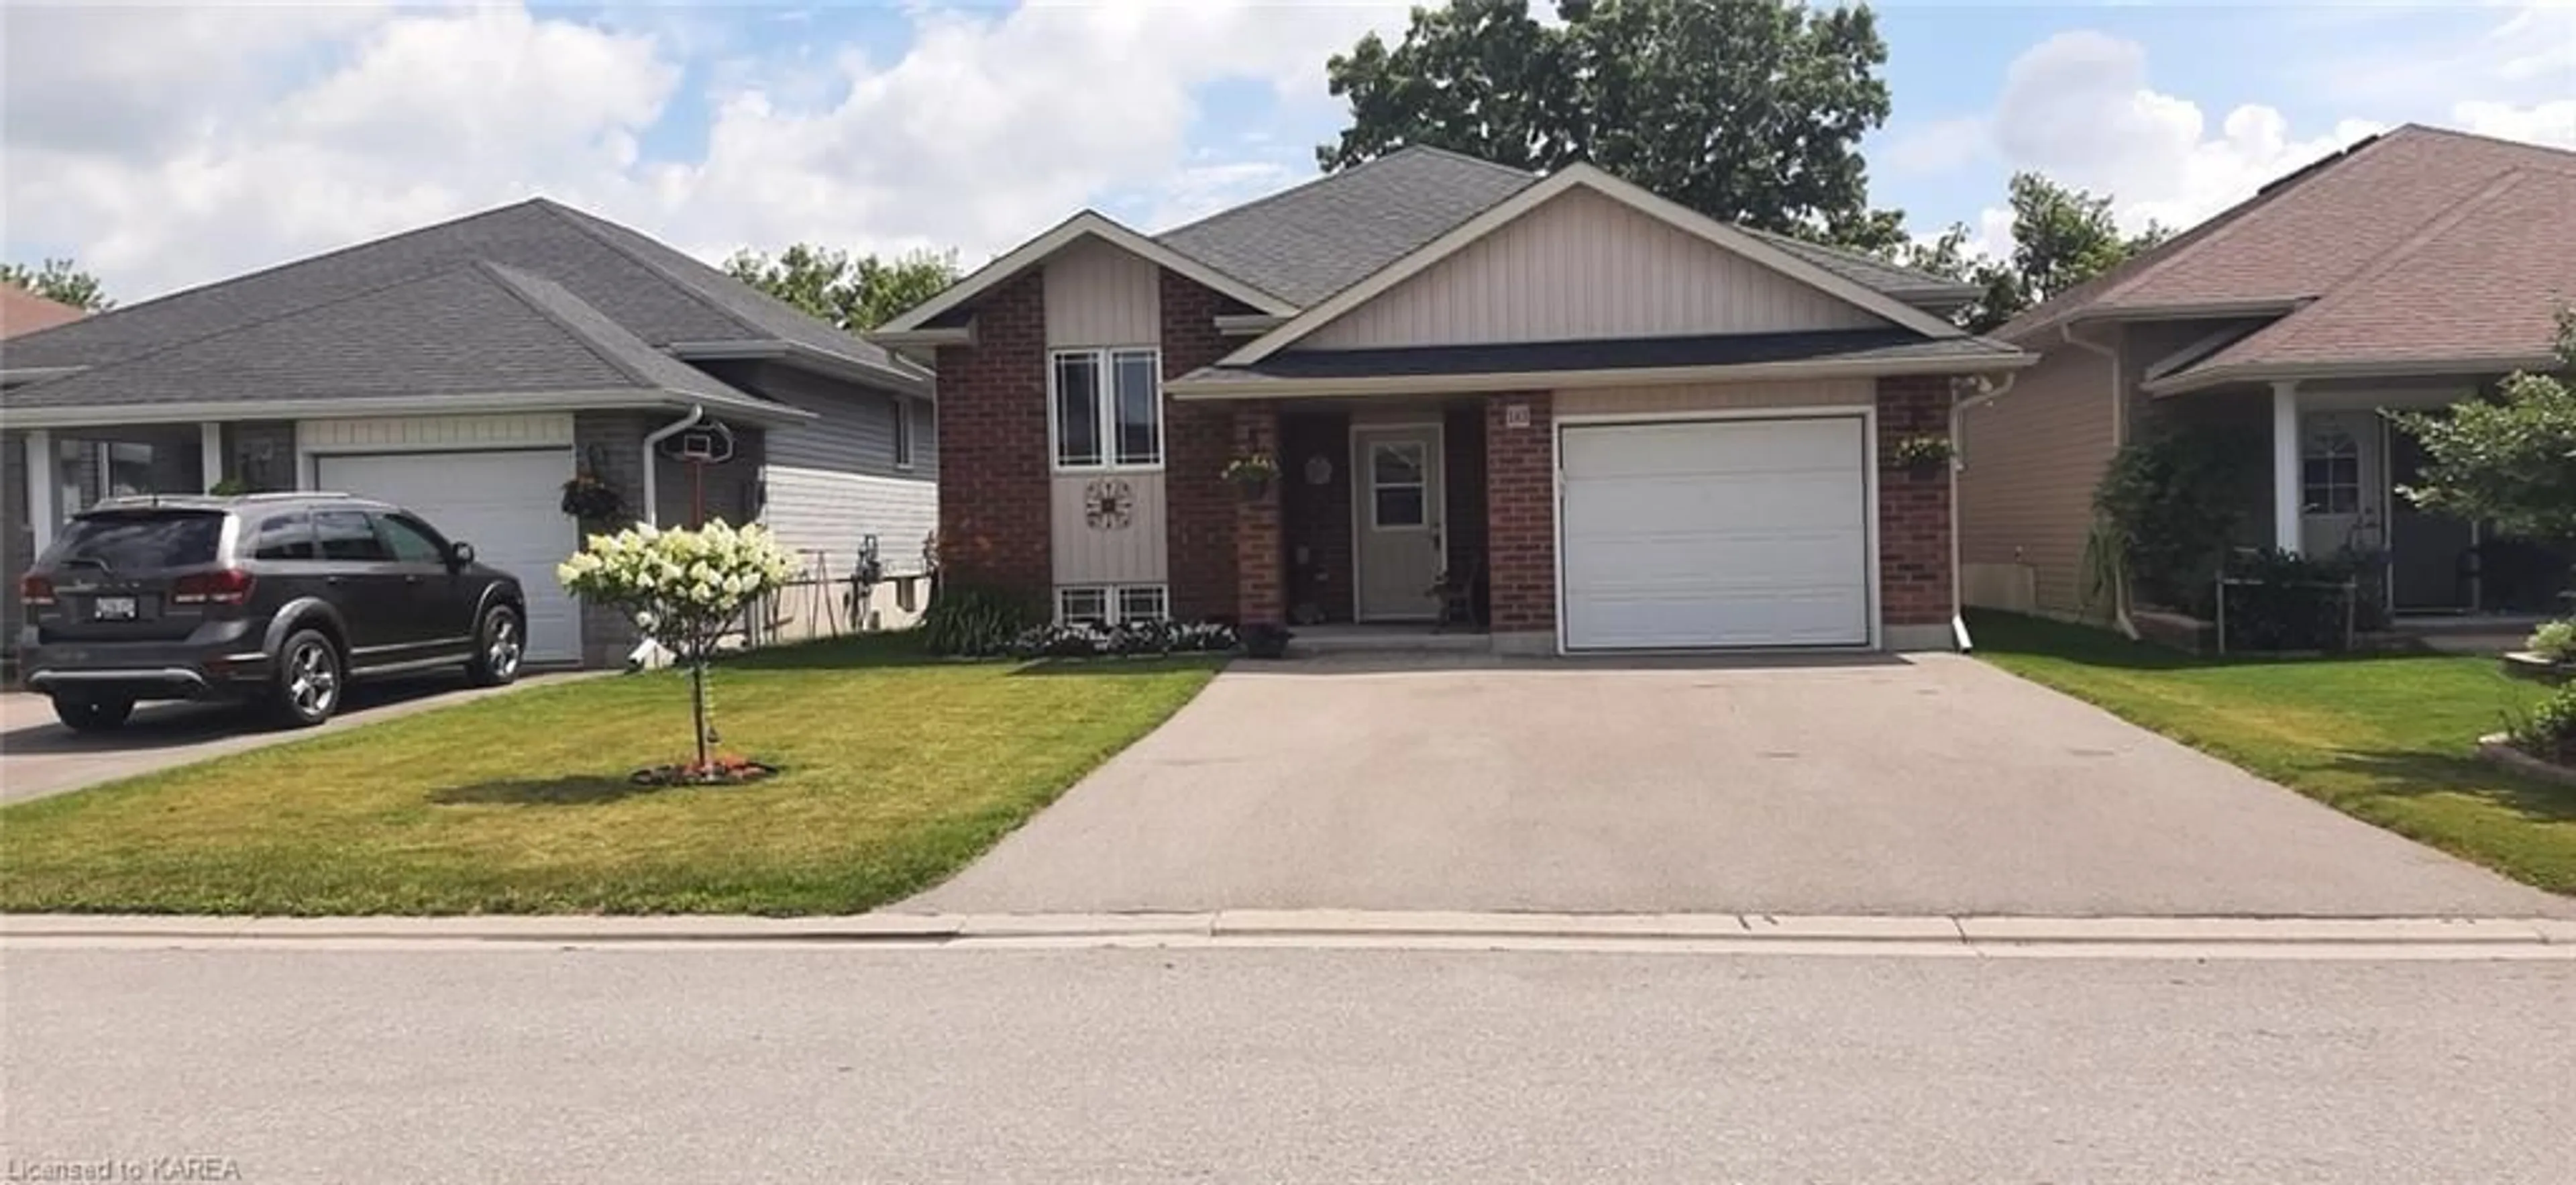 Frontside or backside of a home for 163 Greenhill Lane, Belleville Ontario K8N 0C7